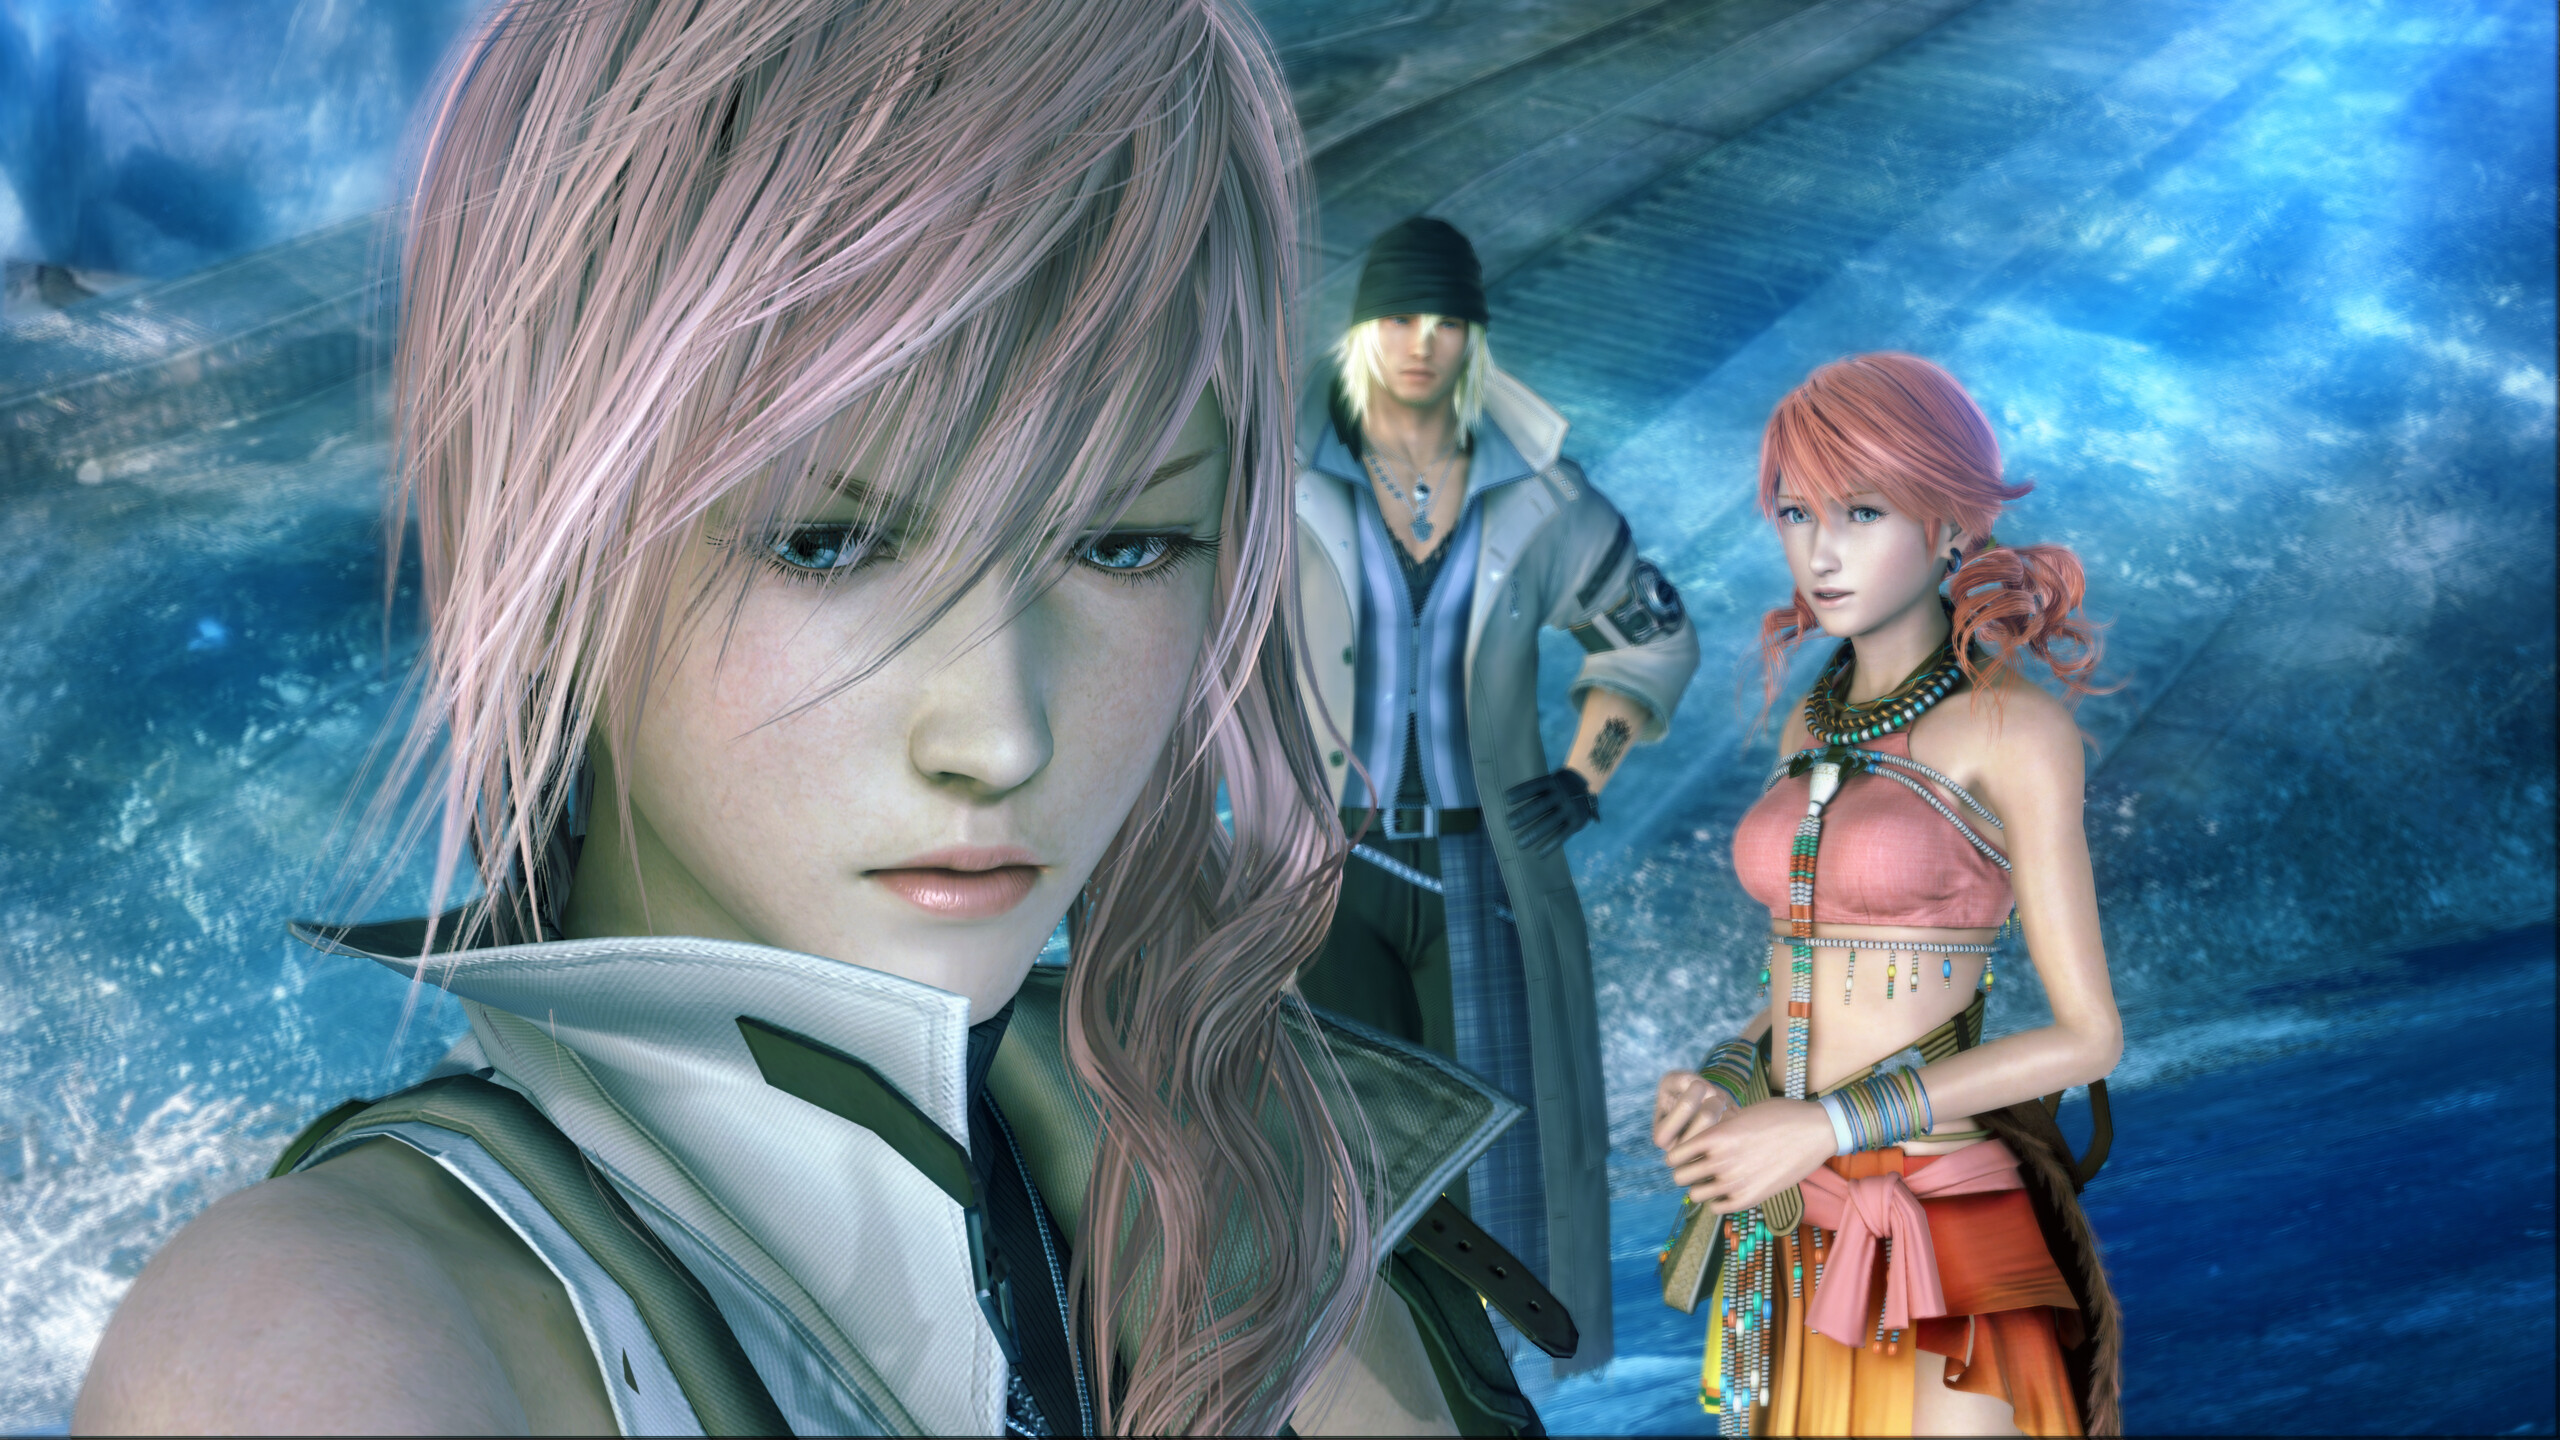 Final Fantasy XIII HD remasterizado